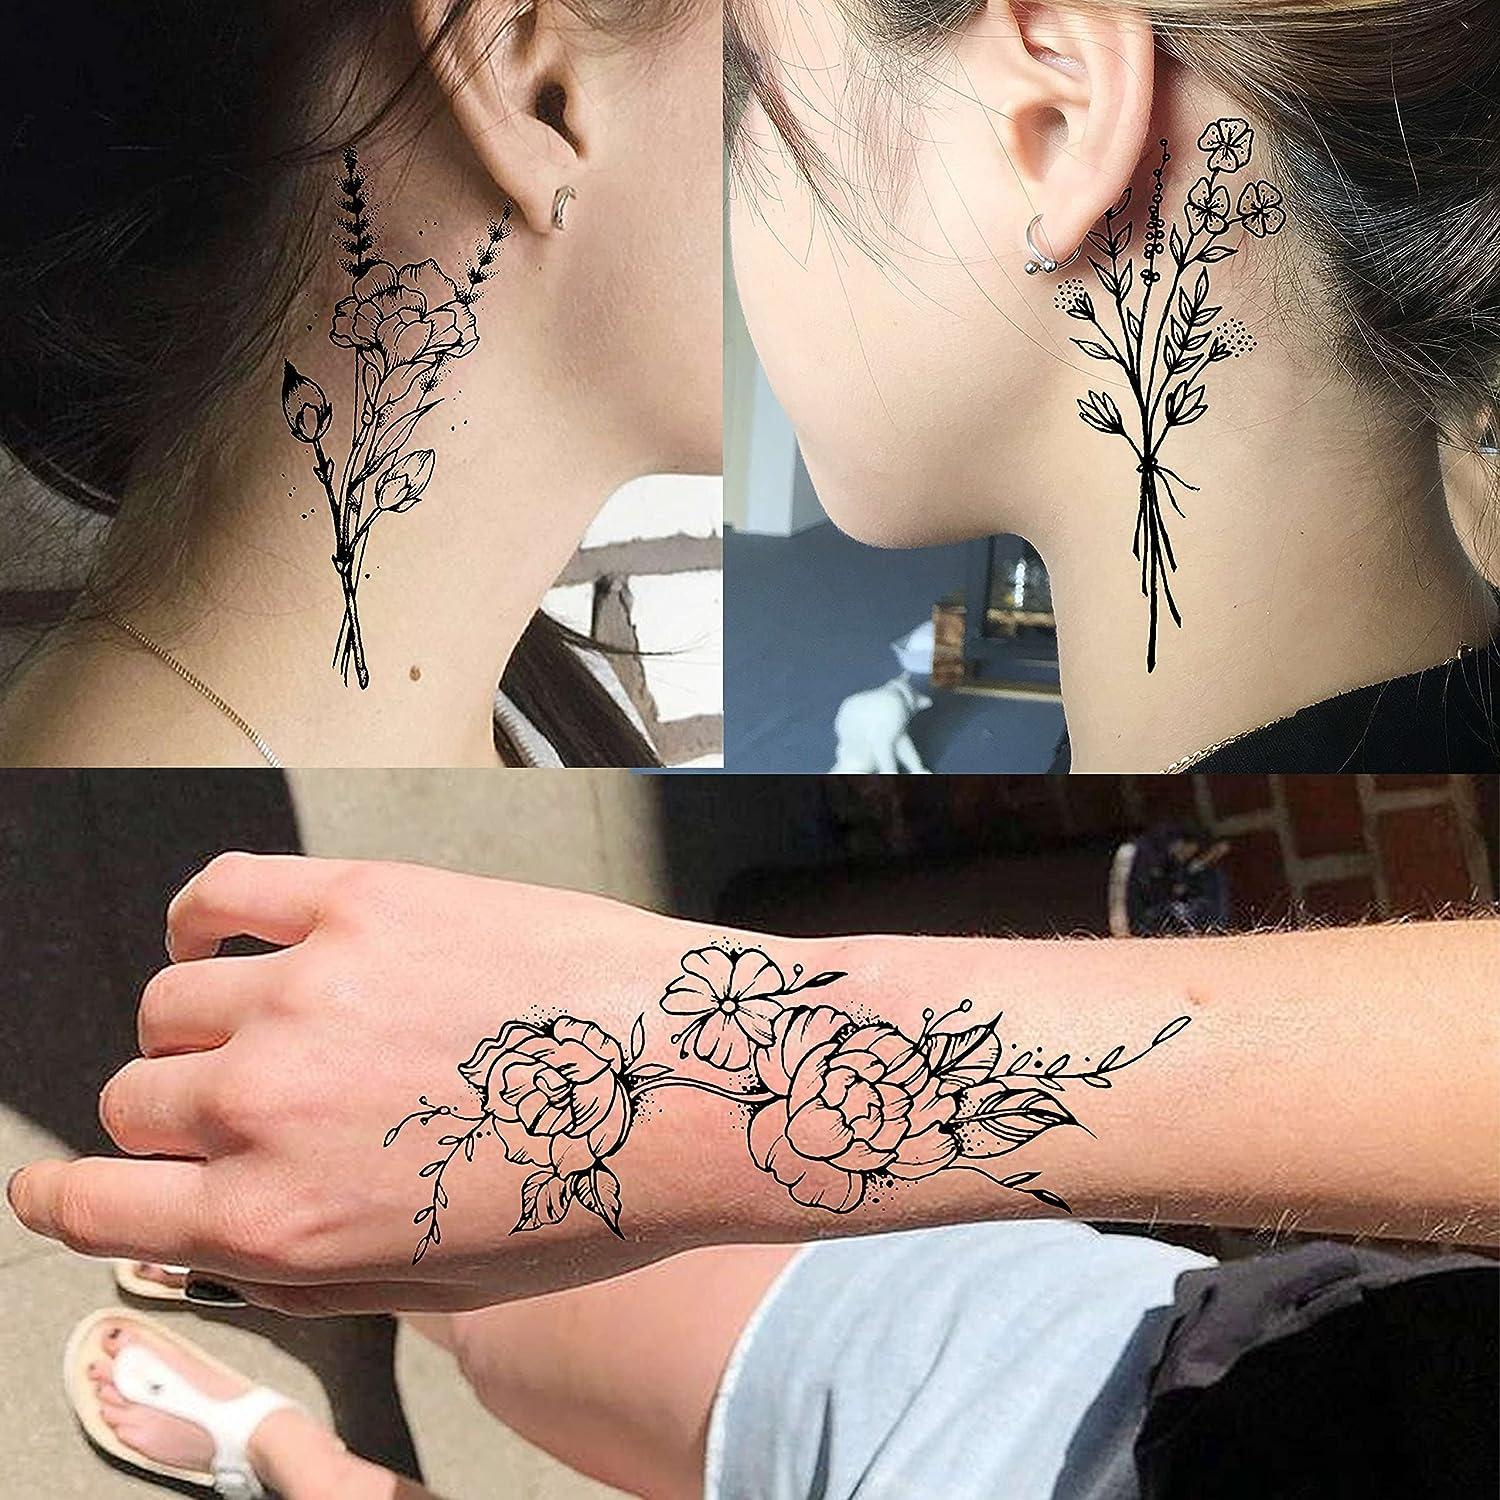 Best Female Neck Tattoo: 50+ Modern Ideas | Best neck tattoos, Front neck  tattoo, Neck tattoo